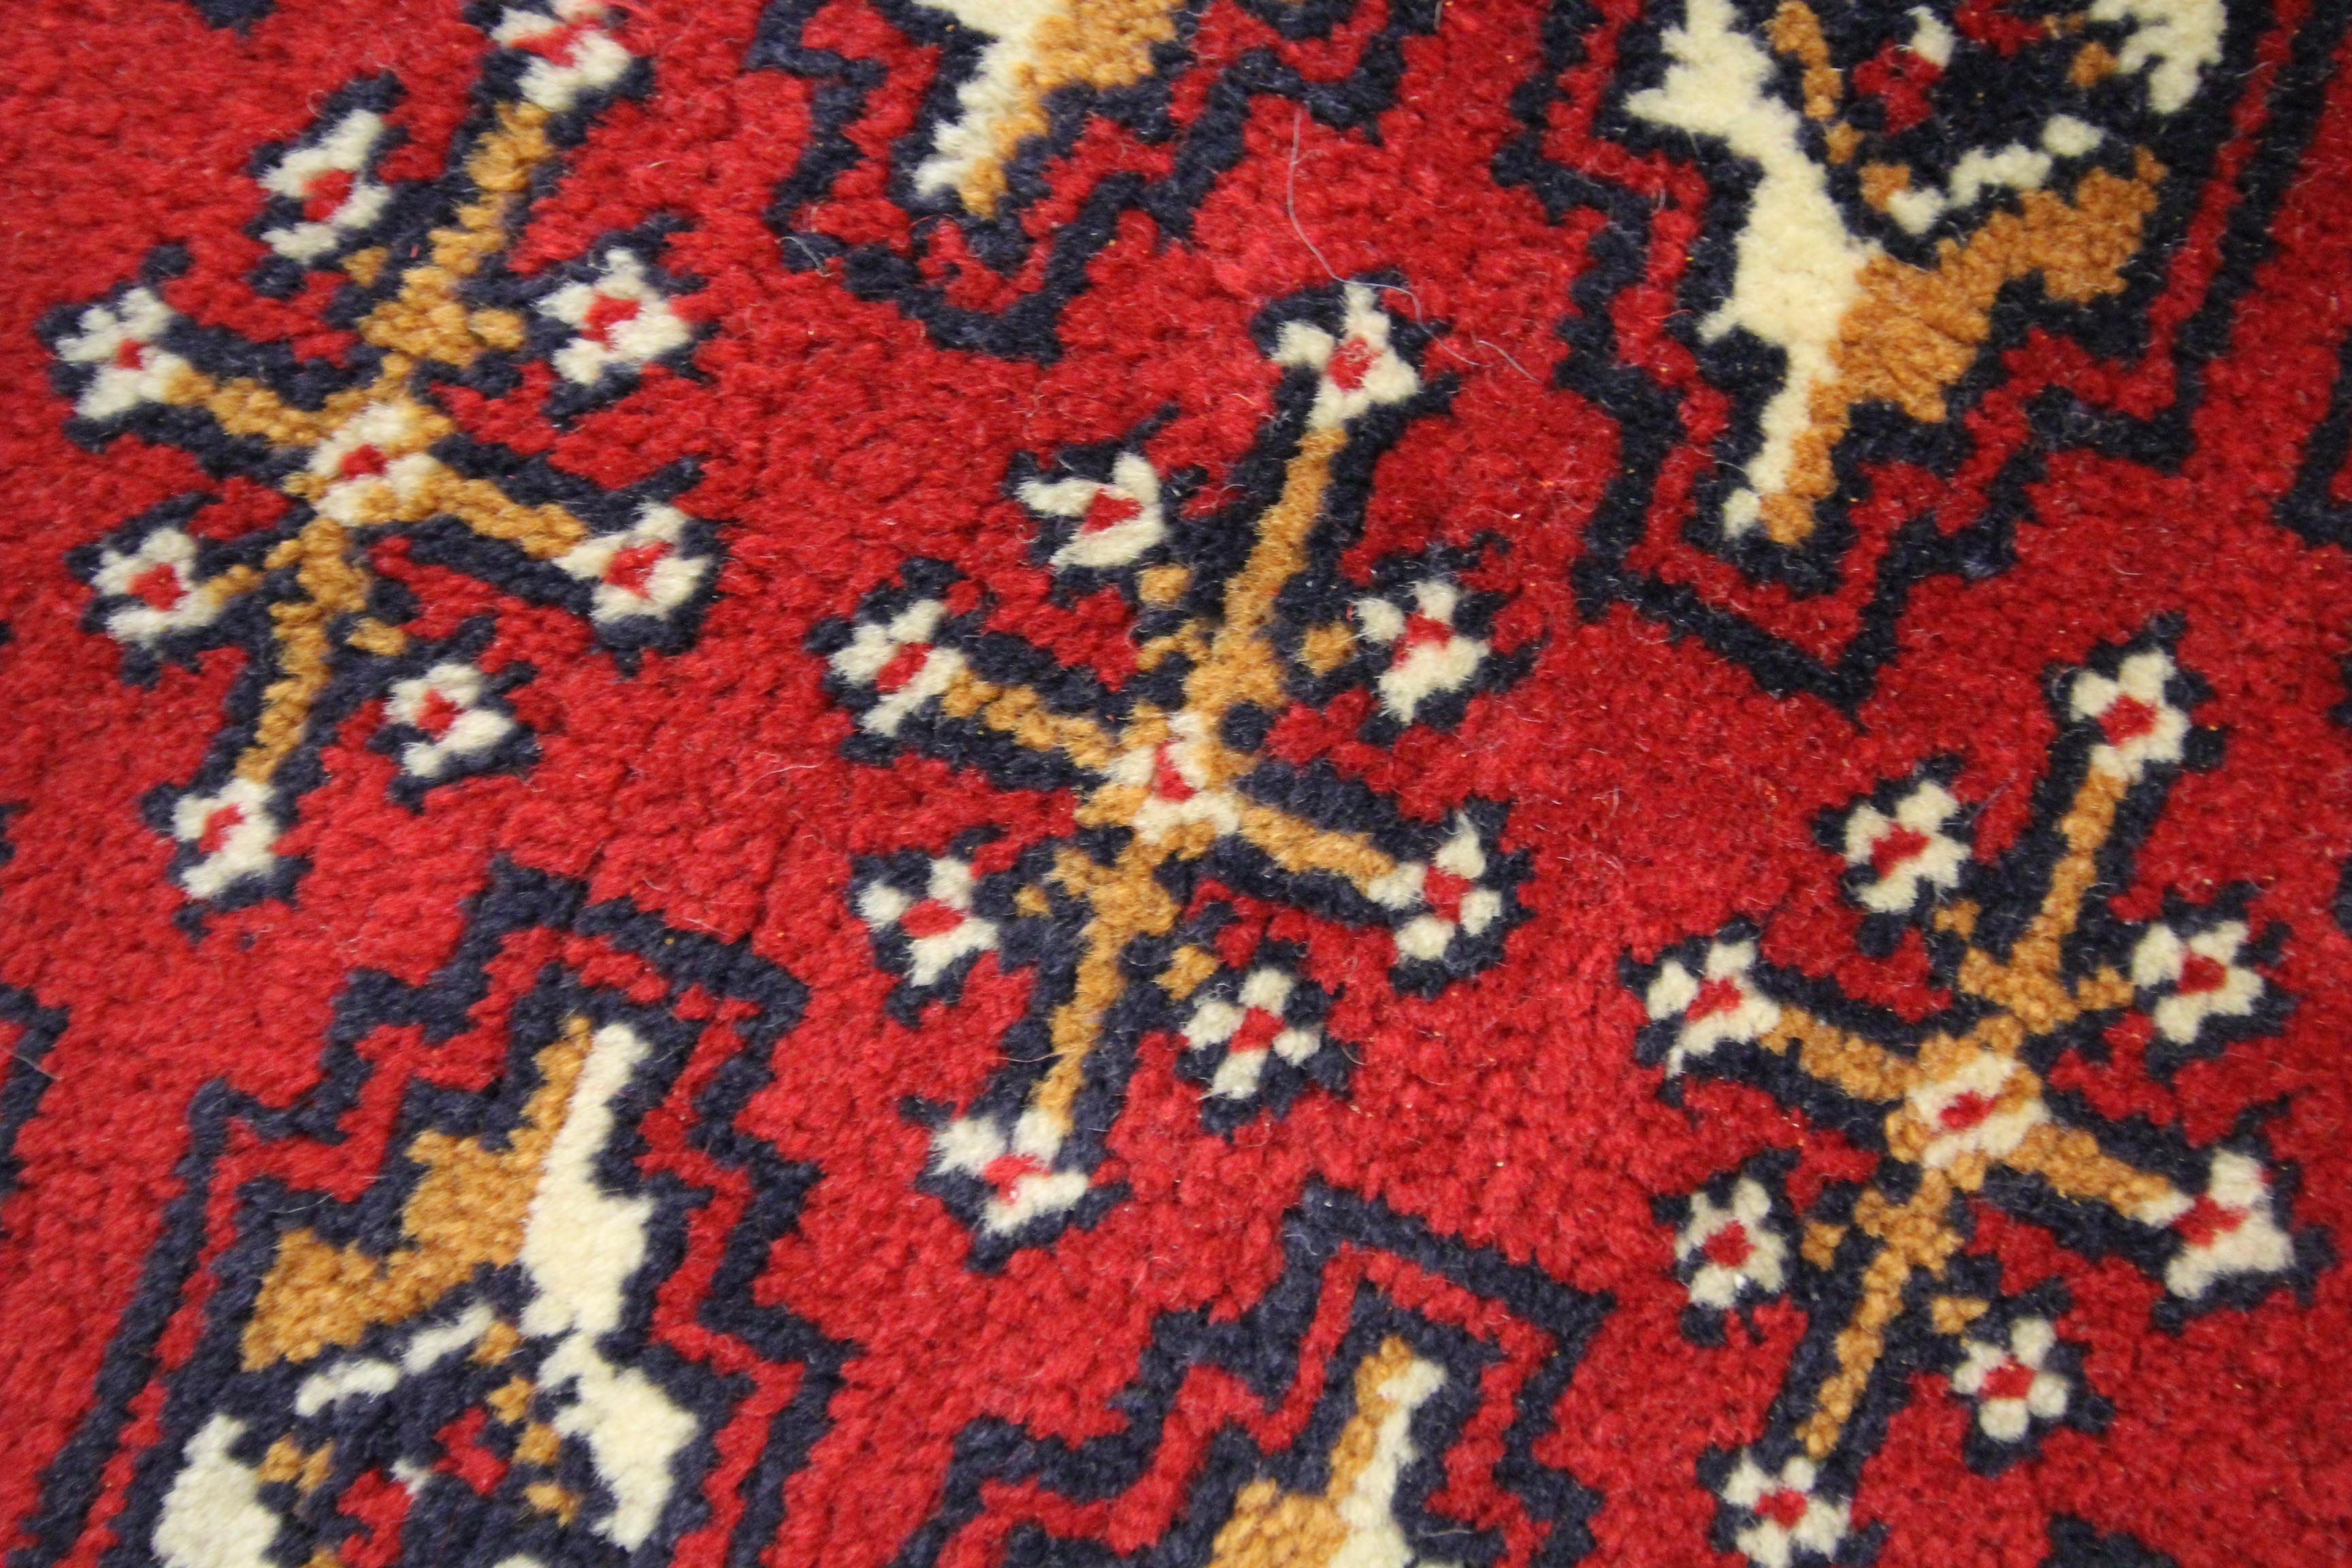 Mid-20th Century Wool Living Room Area Rug Handmade Turkman Carpet Red Poshti Rug For Sale